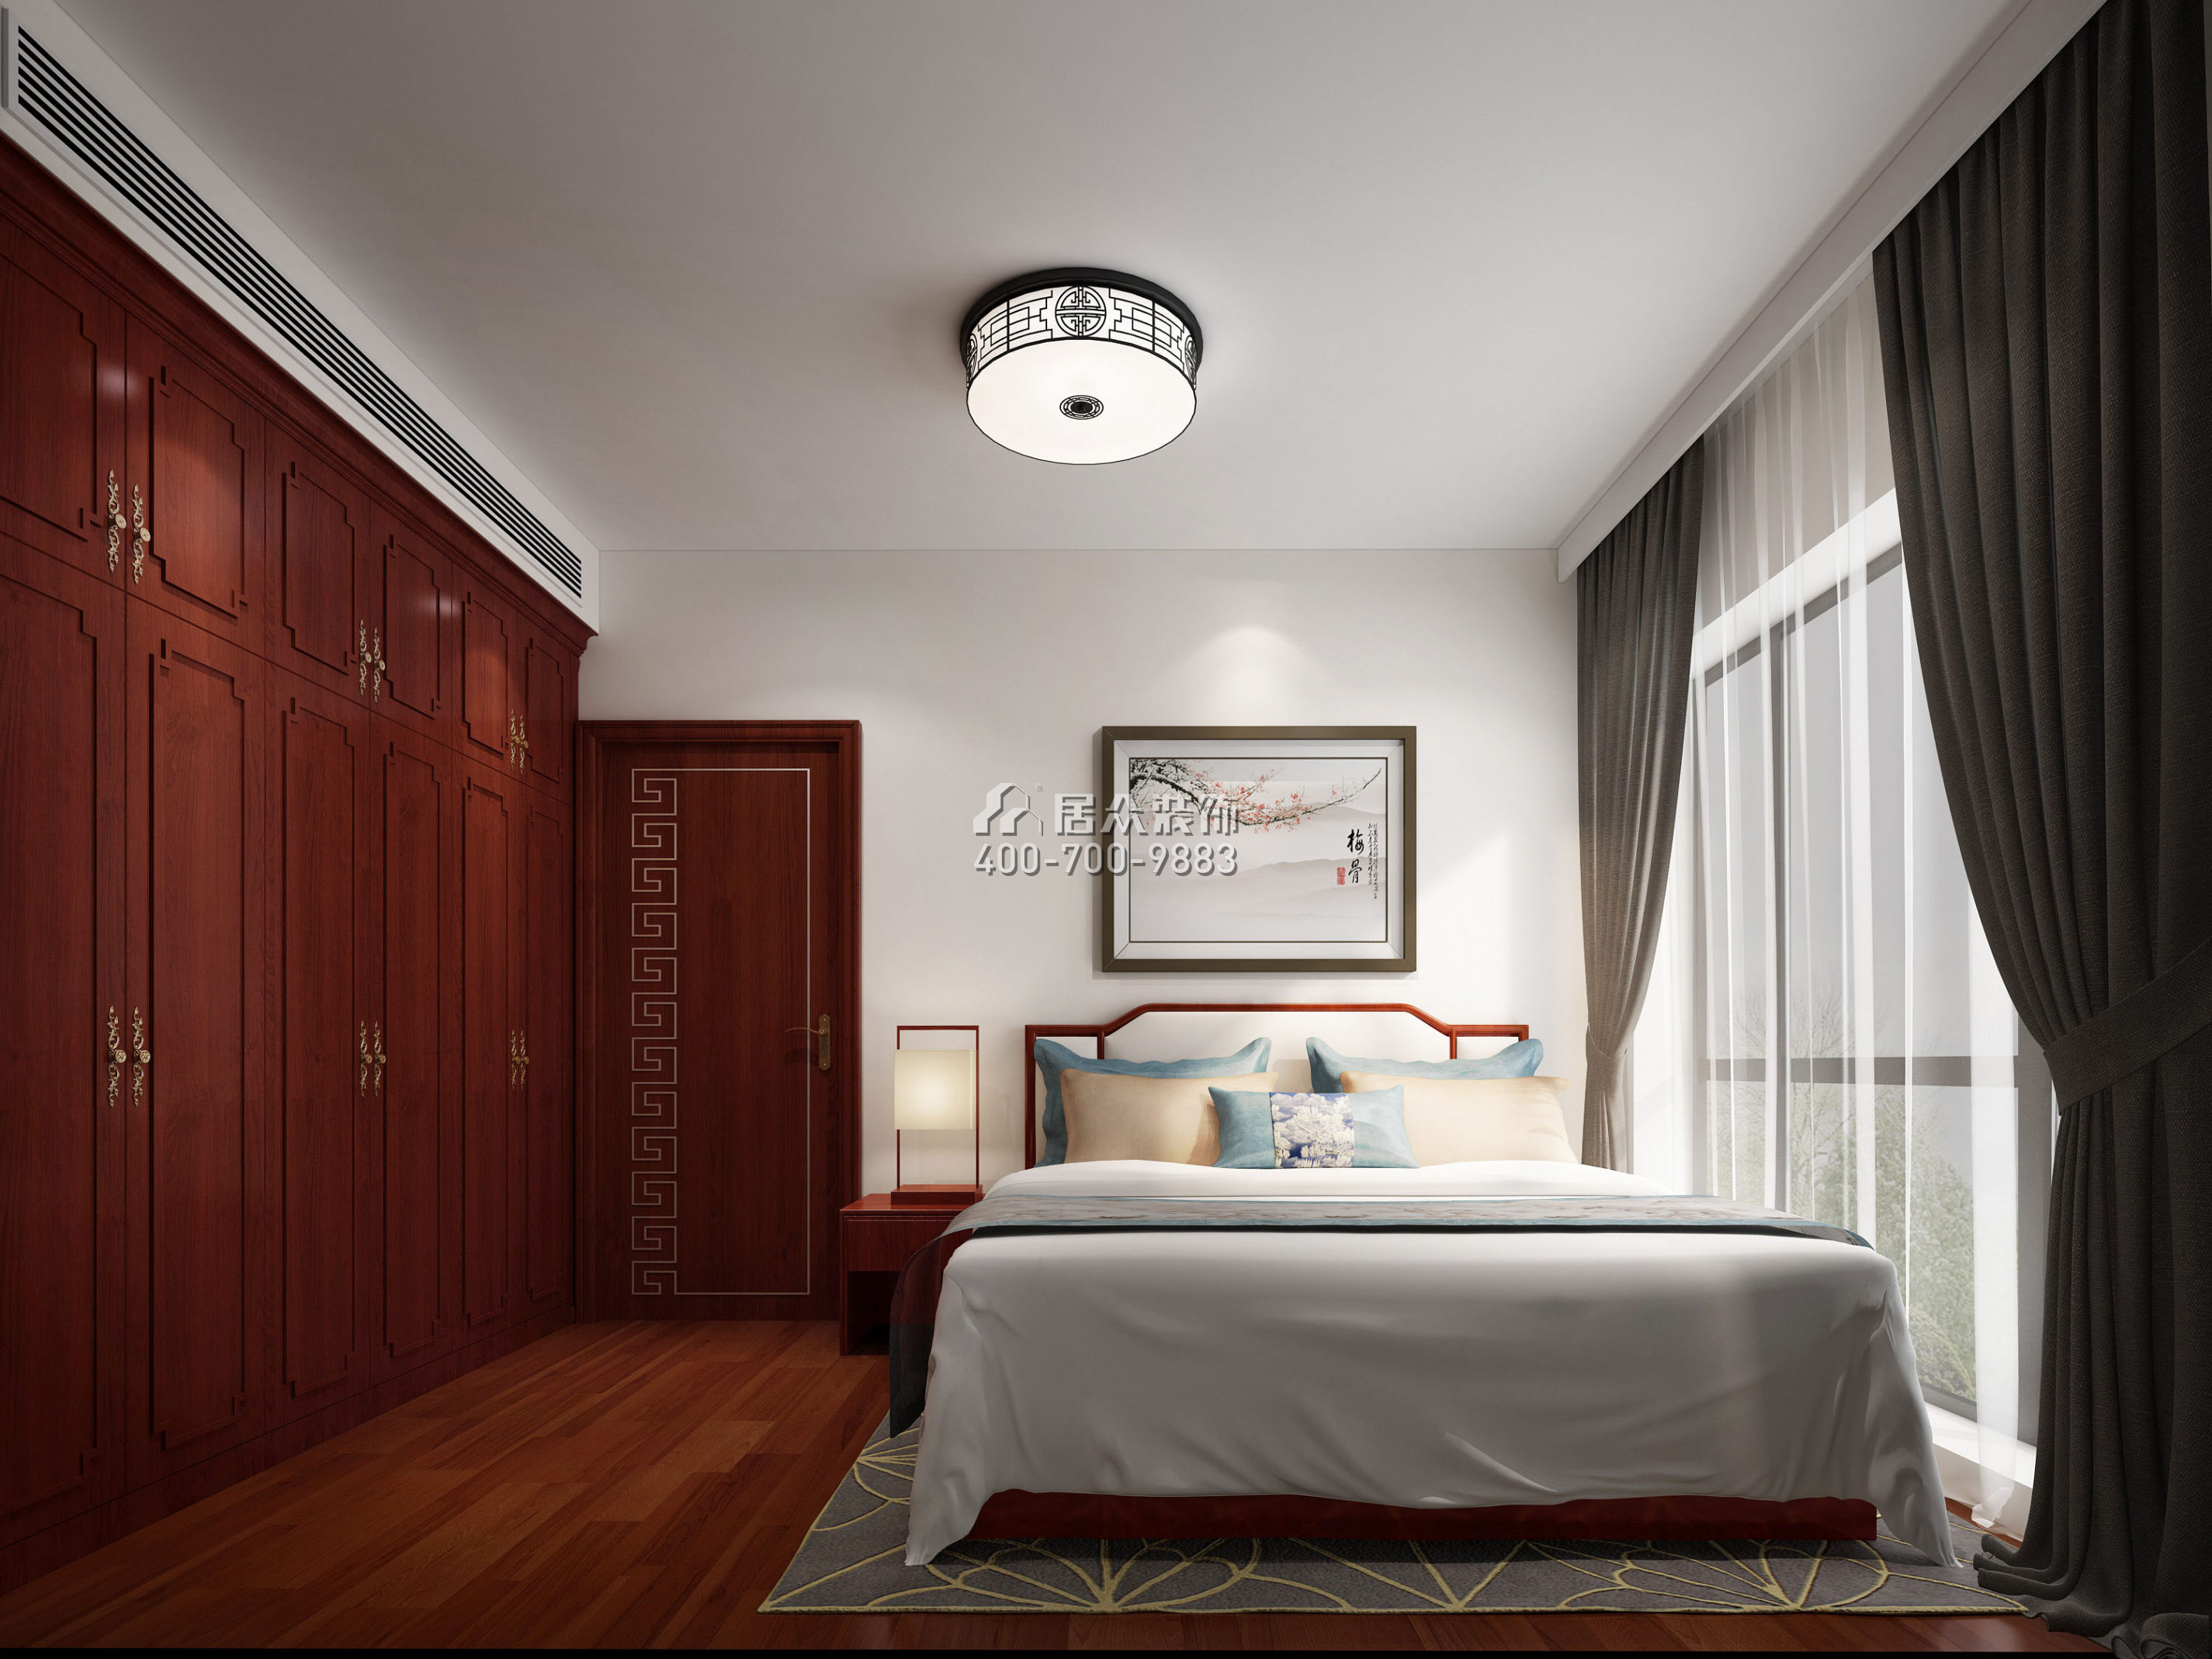 菩提園298平方米中式風格平層戶型臥室裝修效果圖